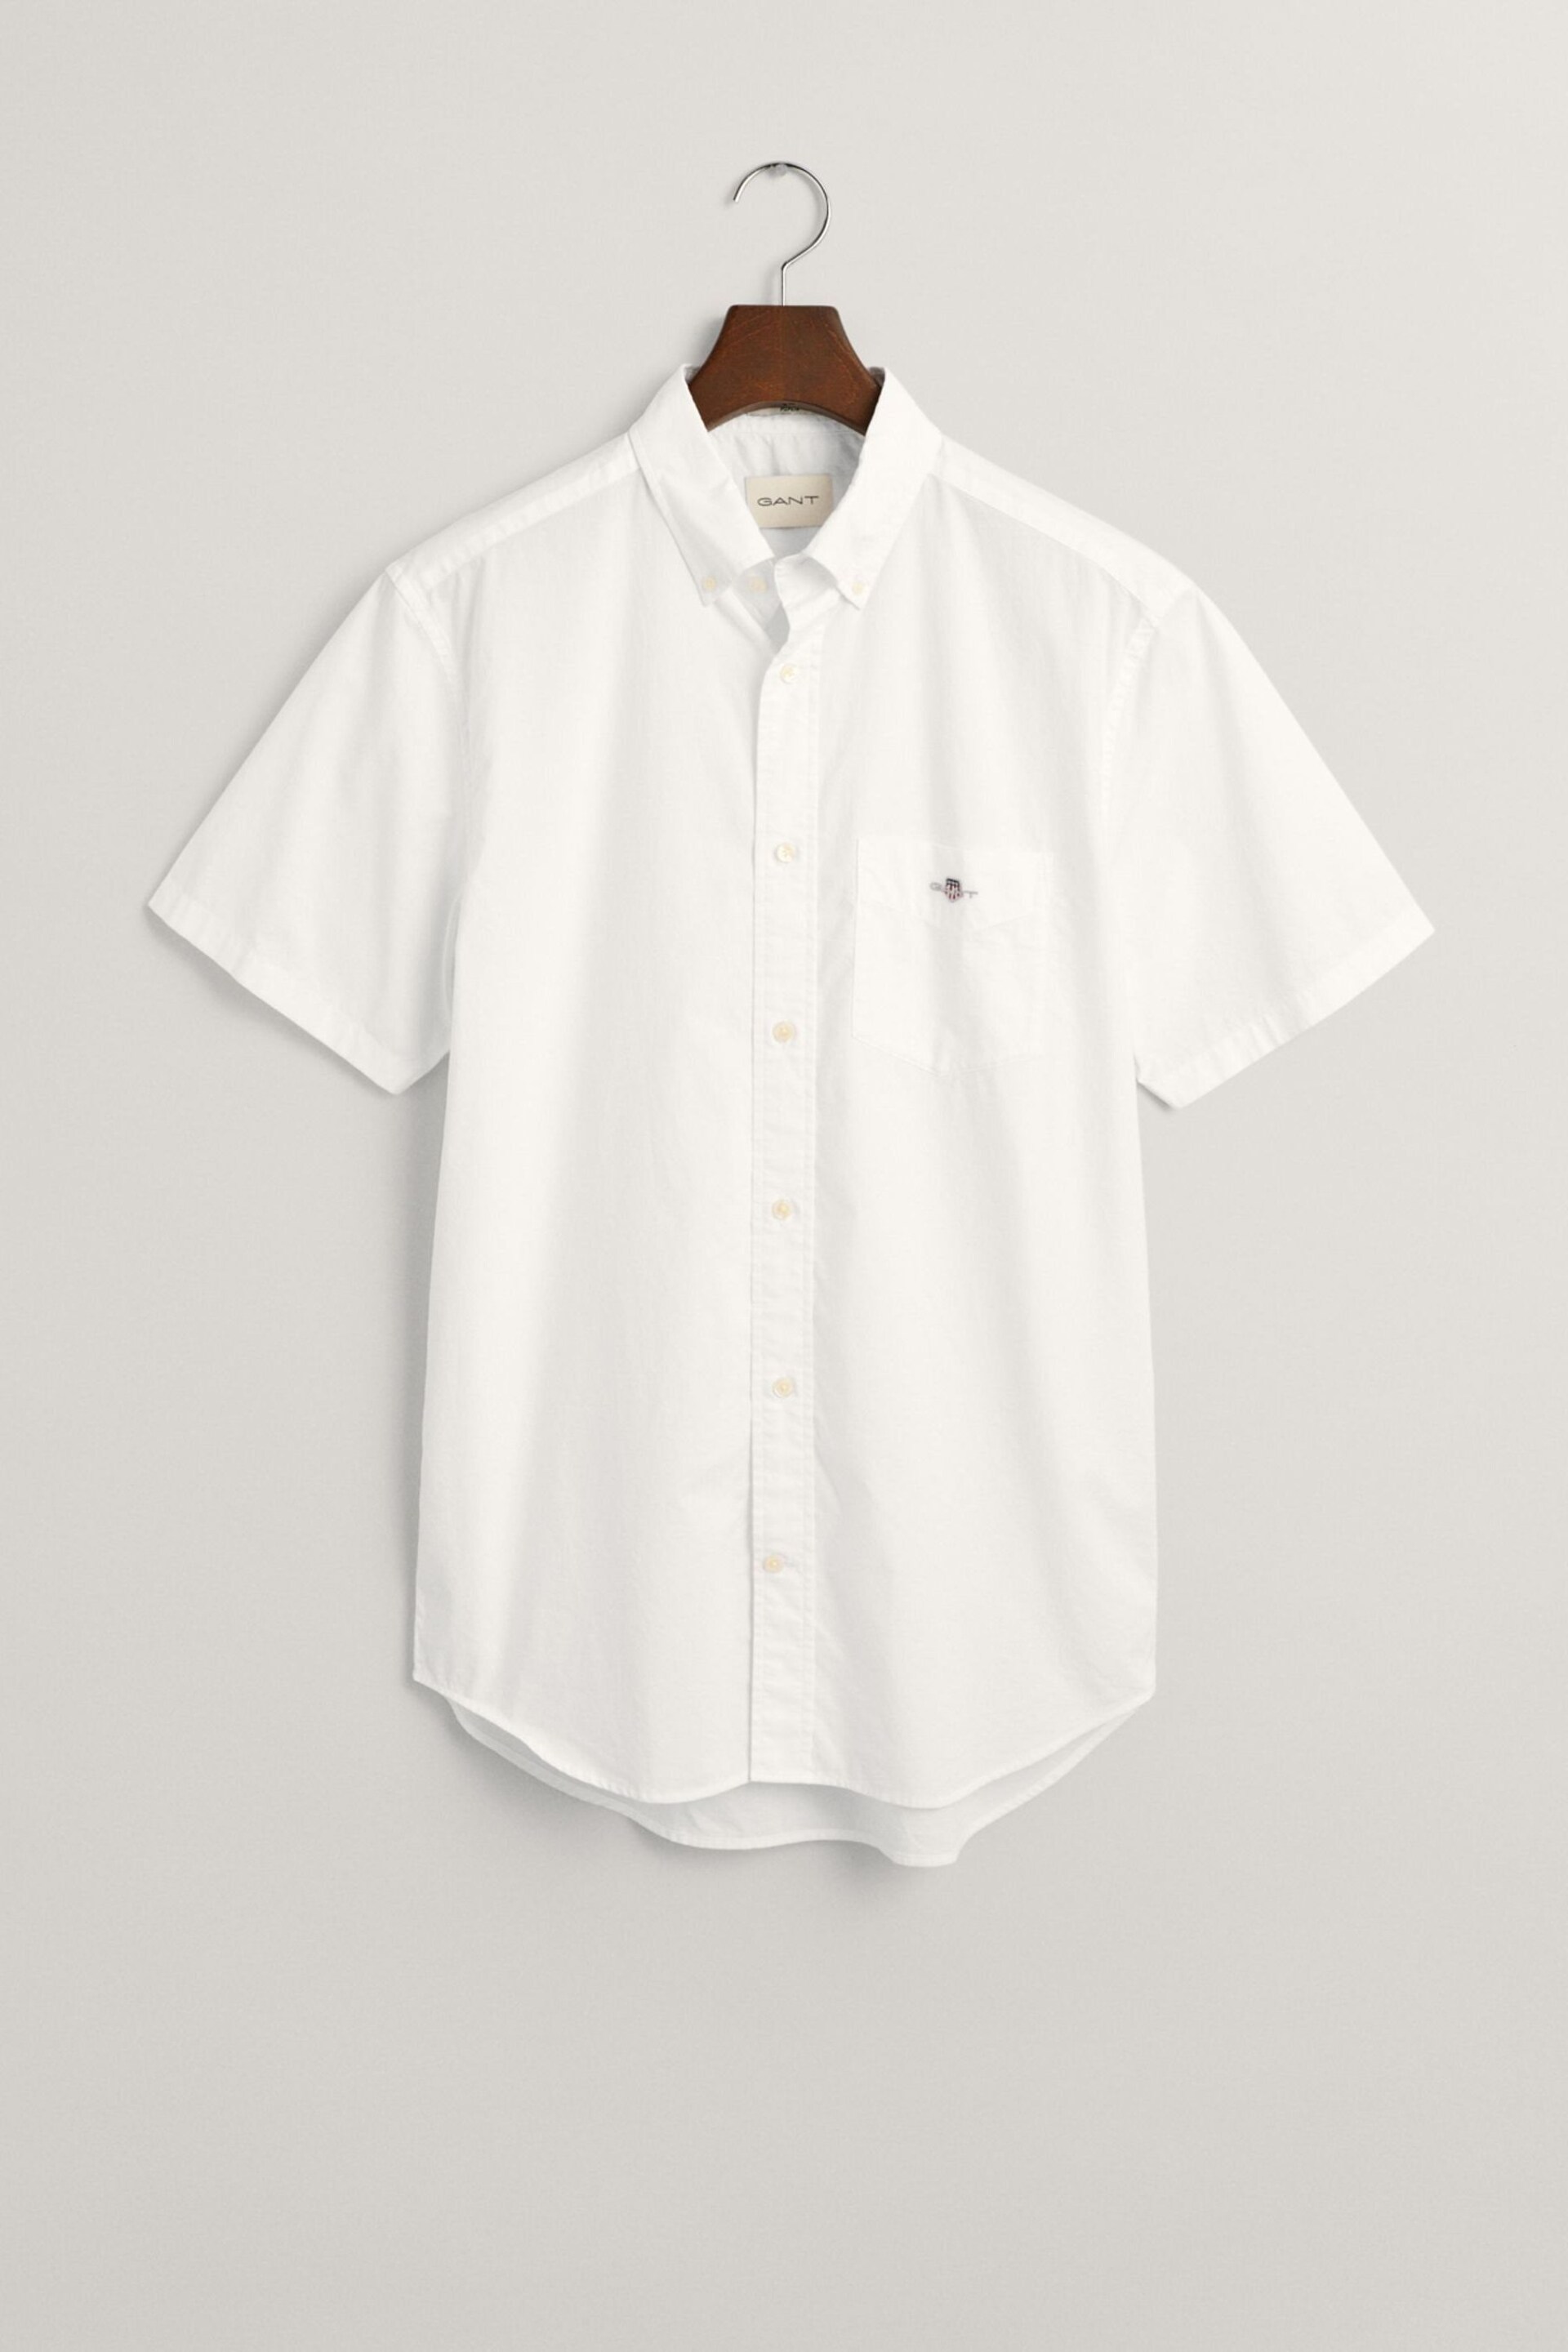 GANT White Regular Fit Poplin Short Sleeve Shirt - Image 6 of 6